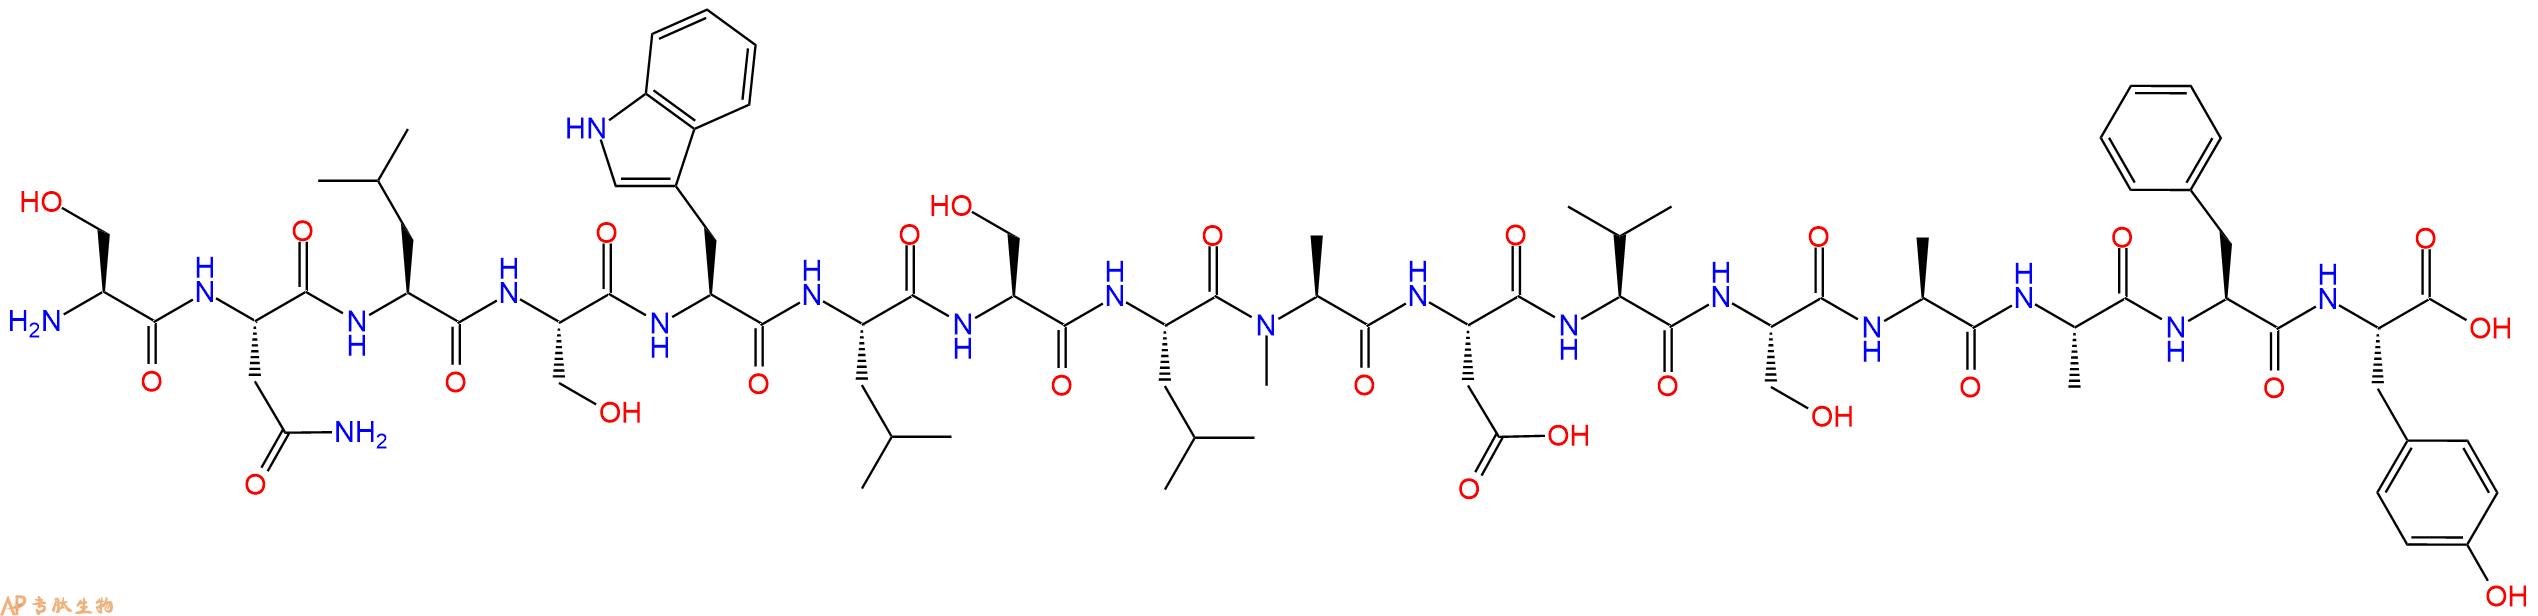 专肽生物产品H2N-Ser-Asn-Leu-Ser-Trp-Leu-Ser-Leu-(NMe)Ala-Asp-V